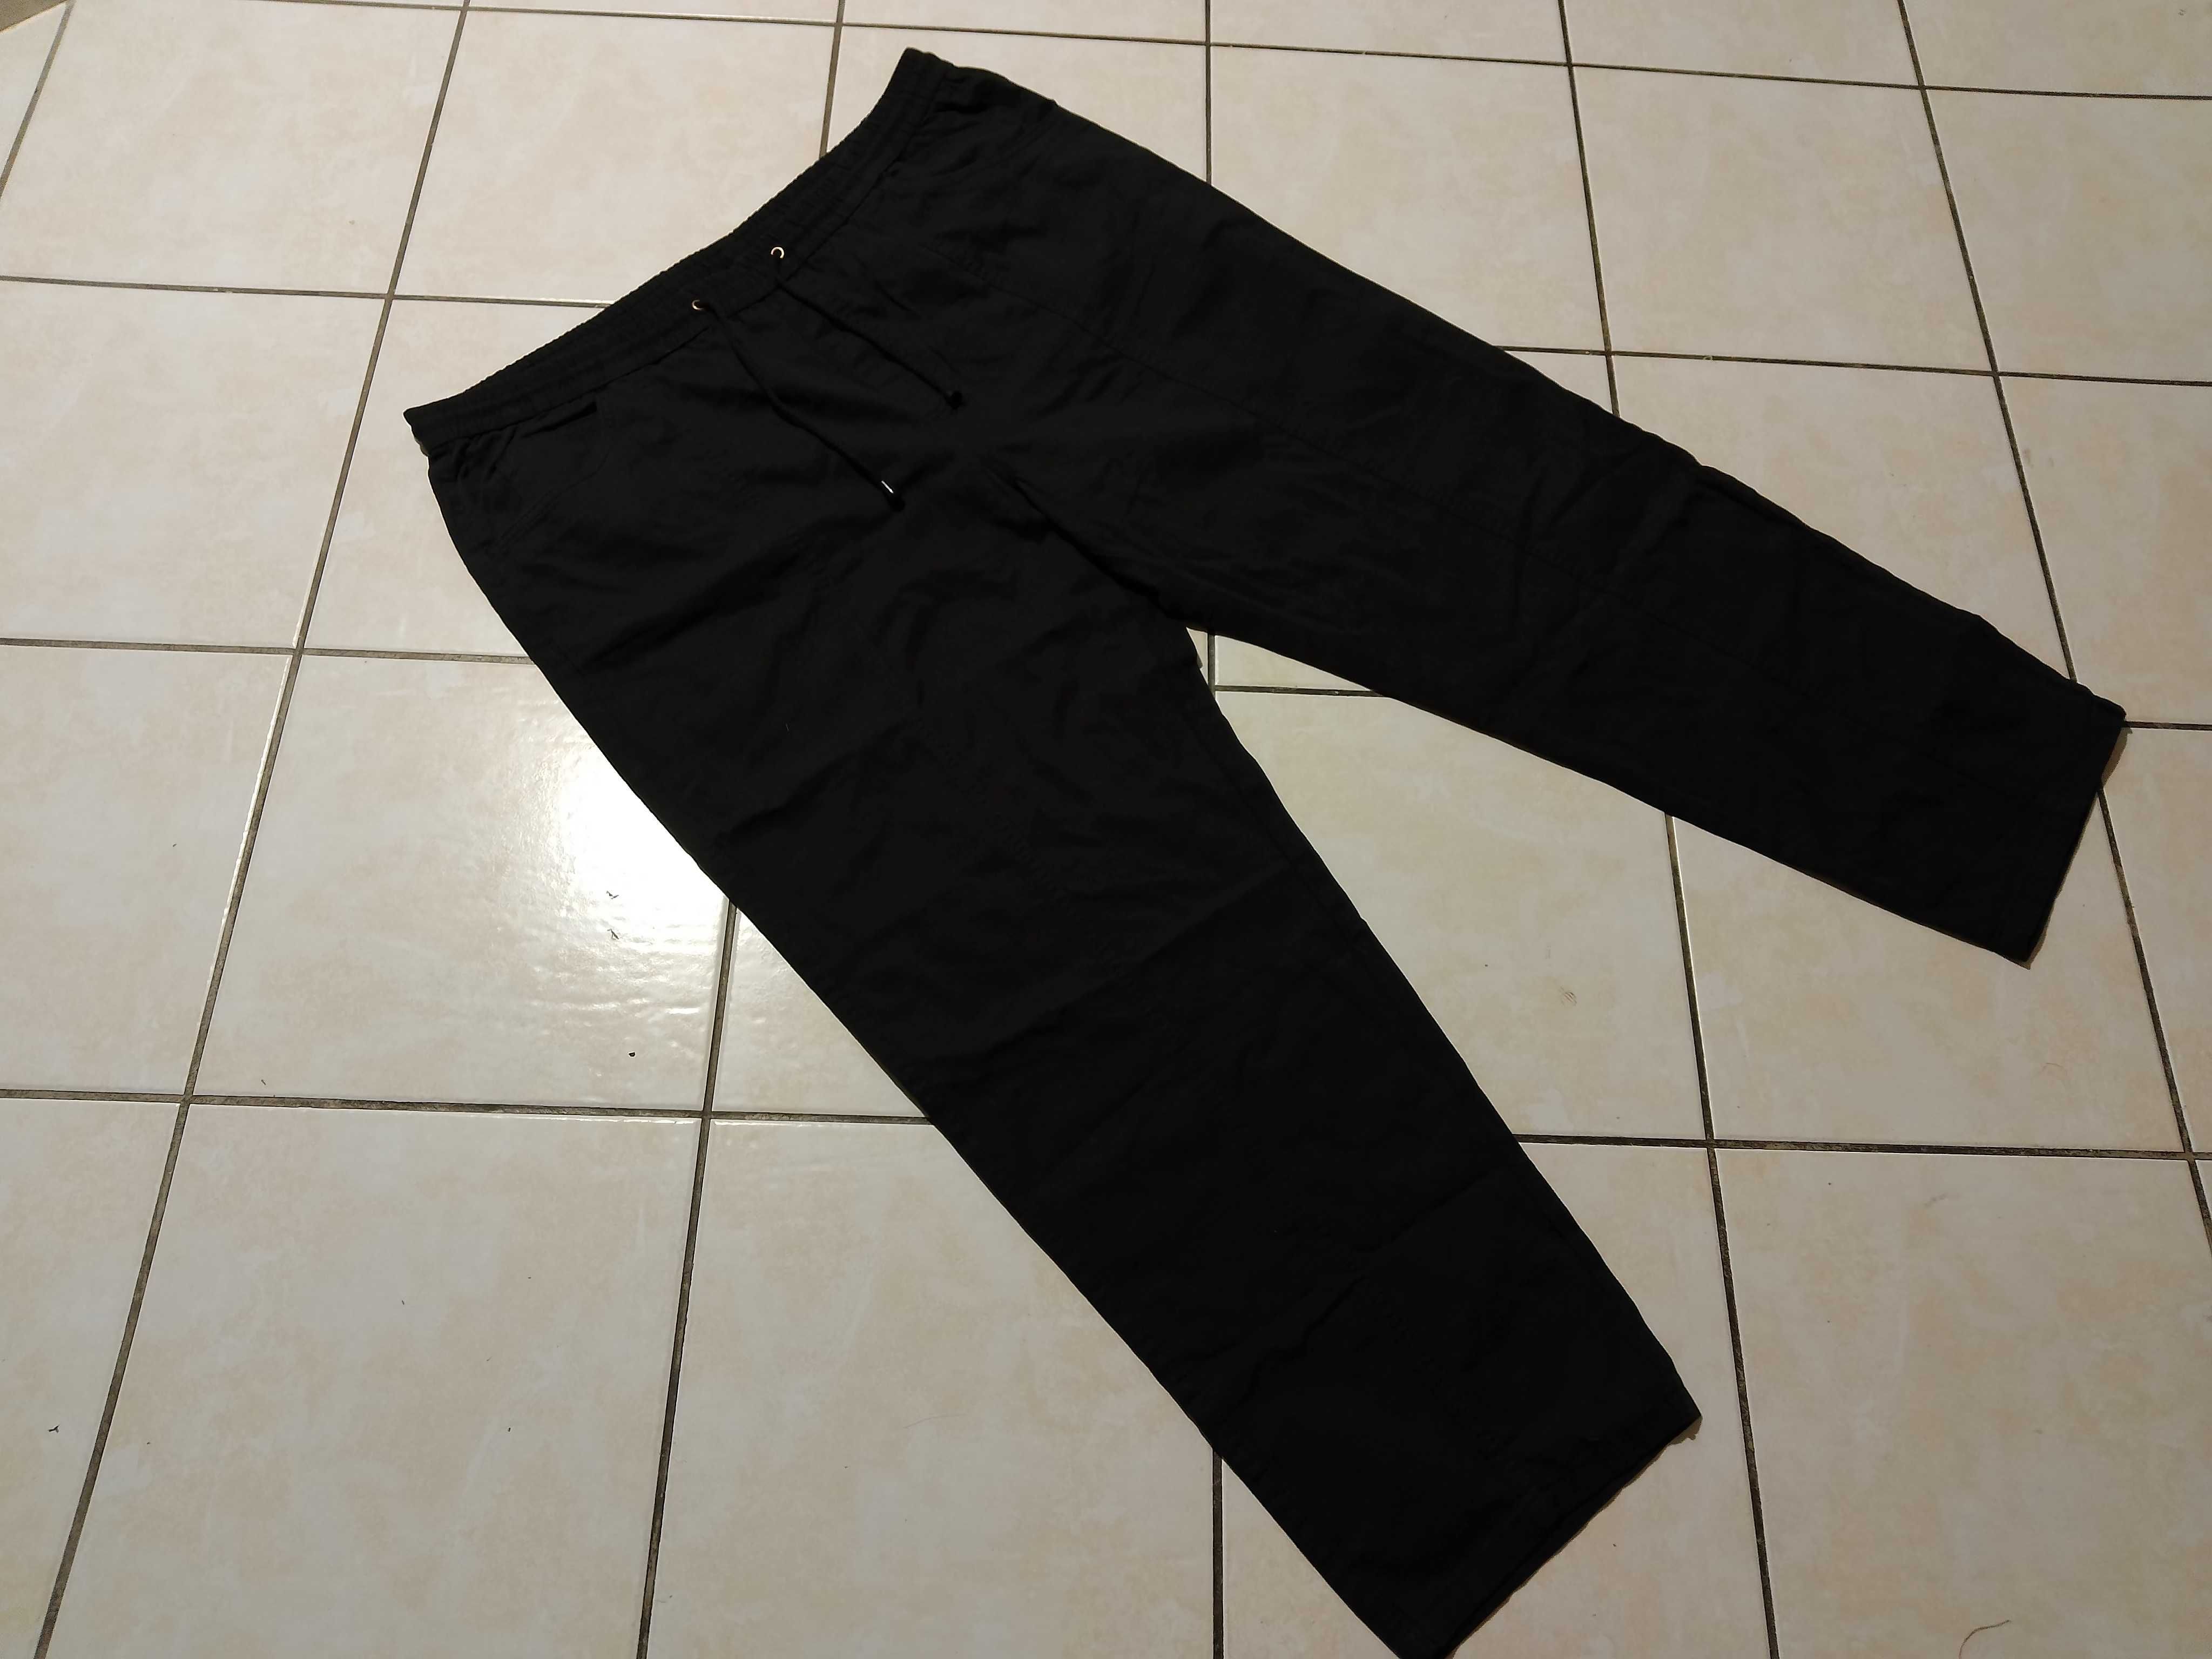 HALOO - NOWE Spodnie Męskie Cienki Jeans pas 98-116cm/ dł. 112cm